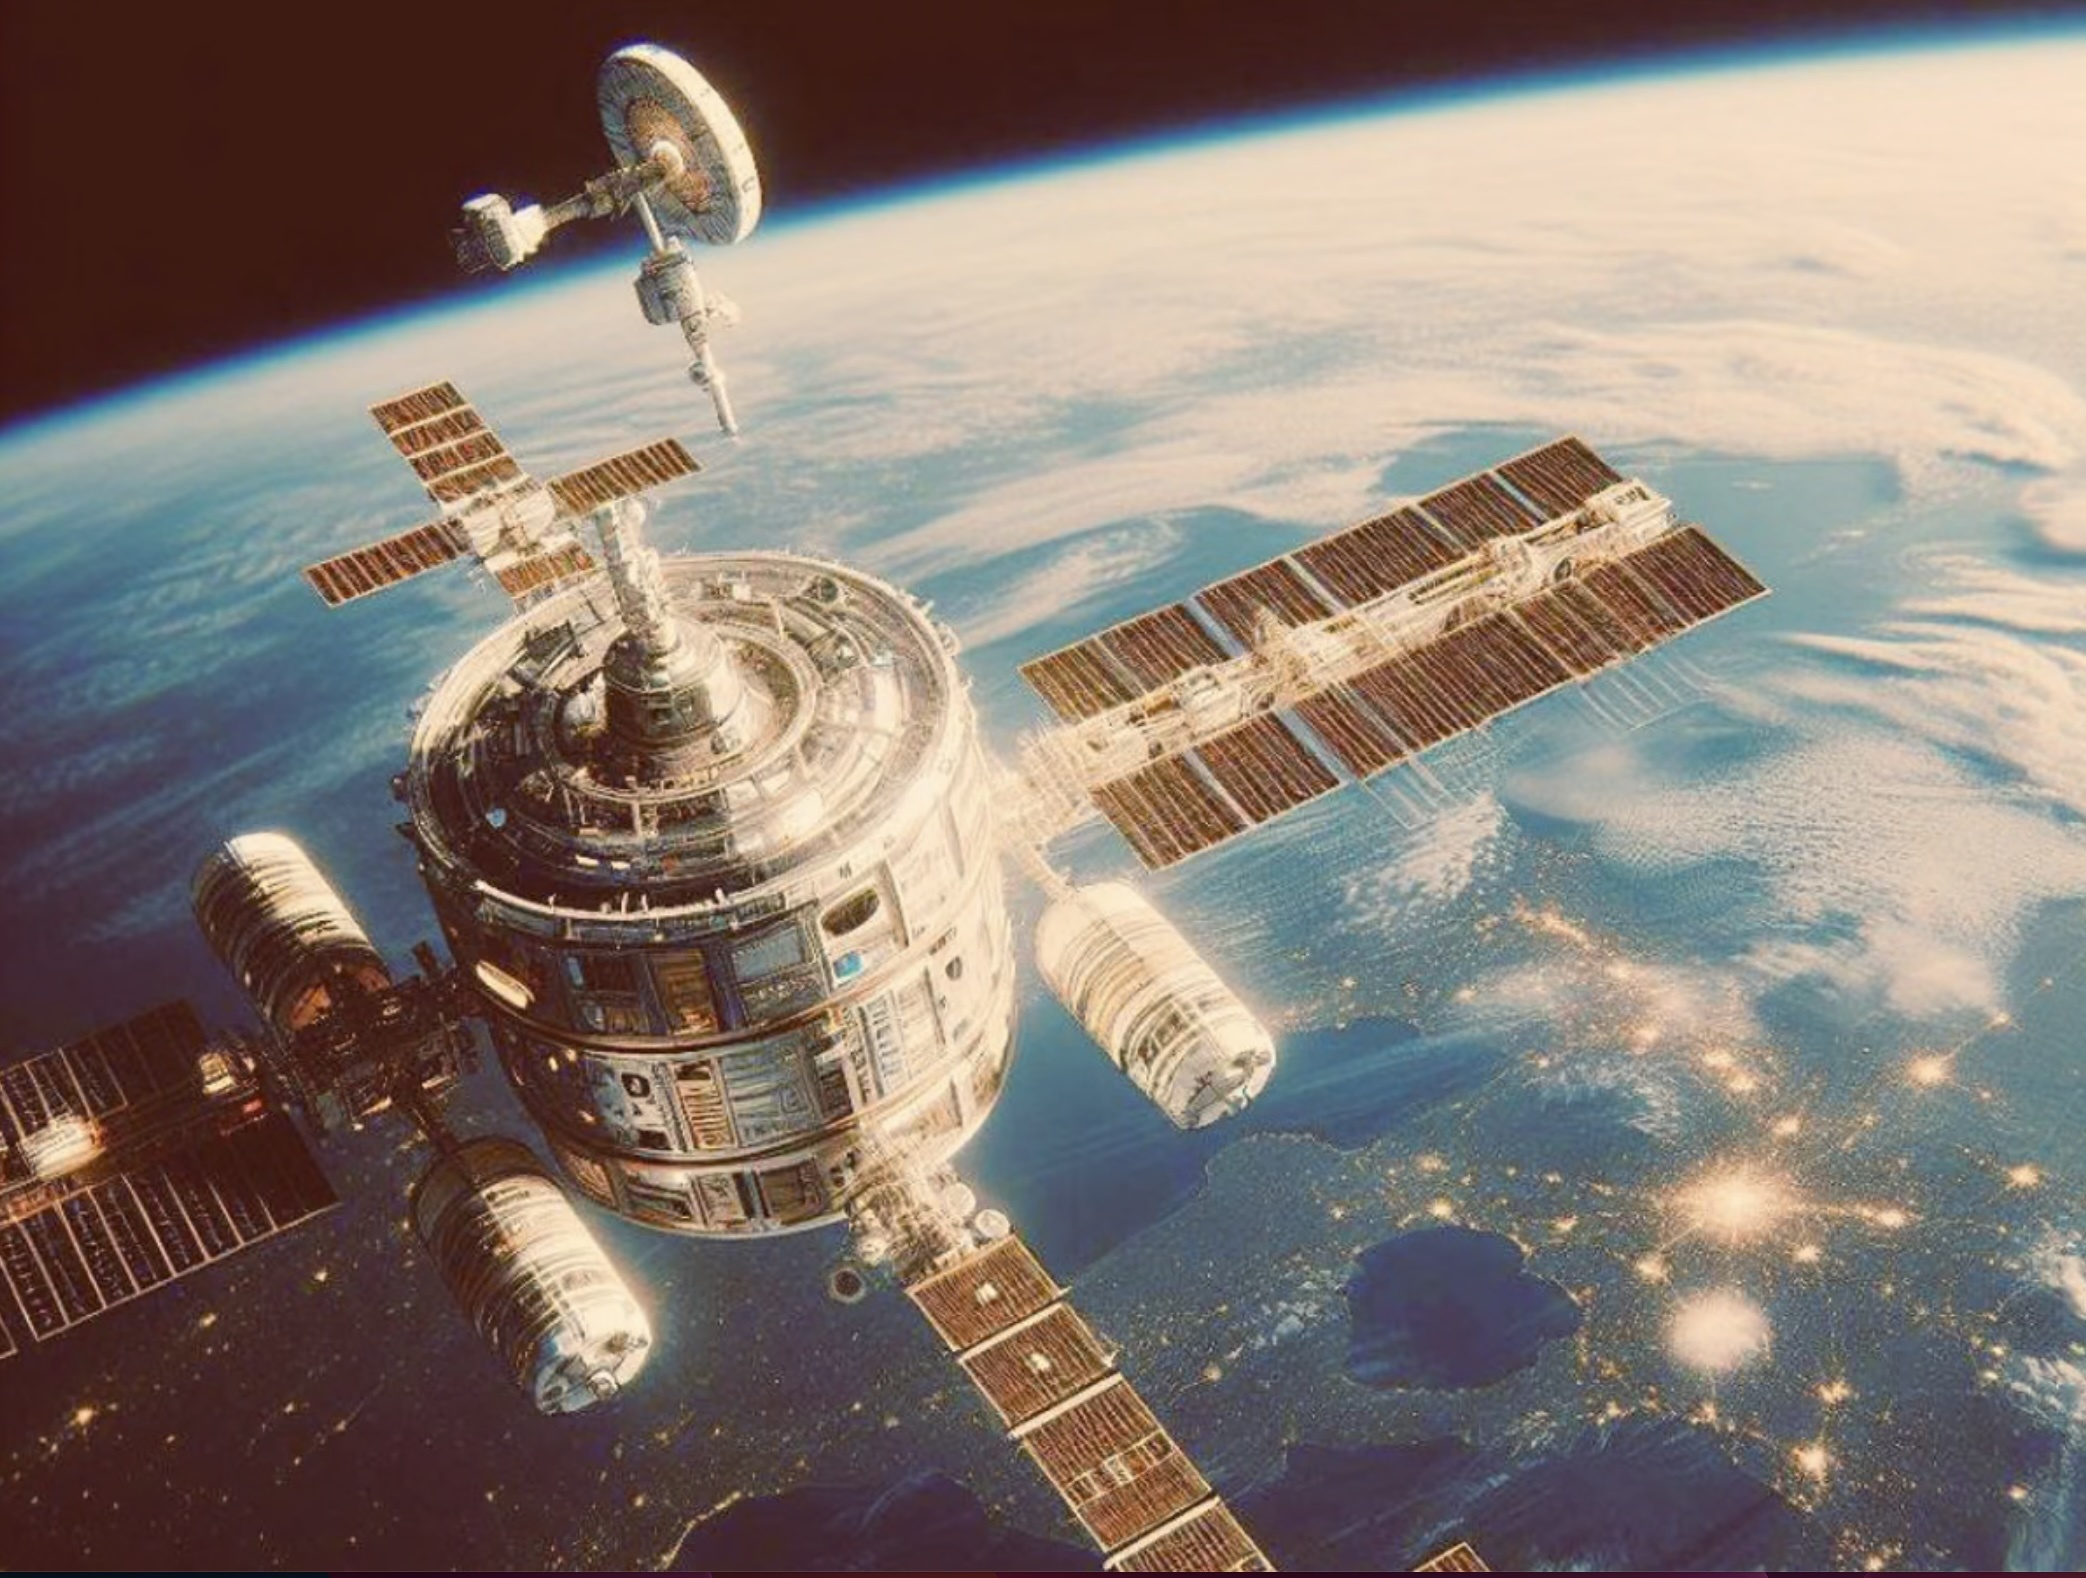 isro-space-station-projekt